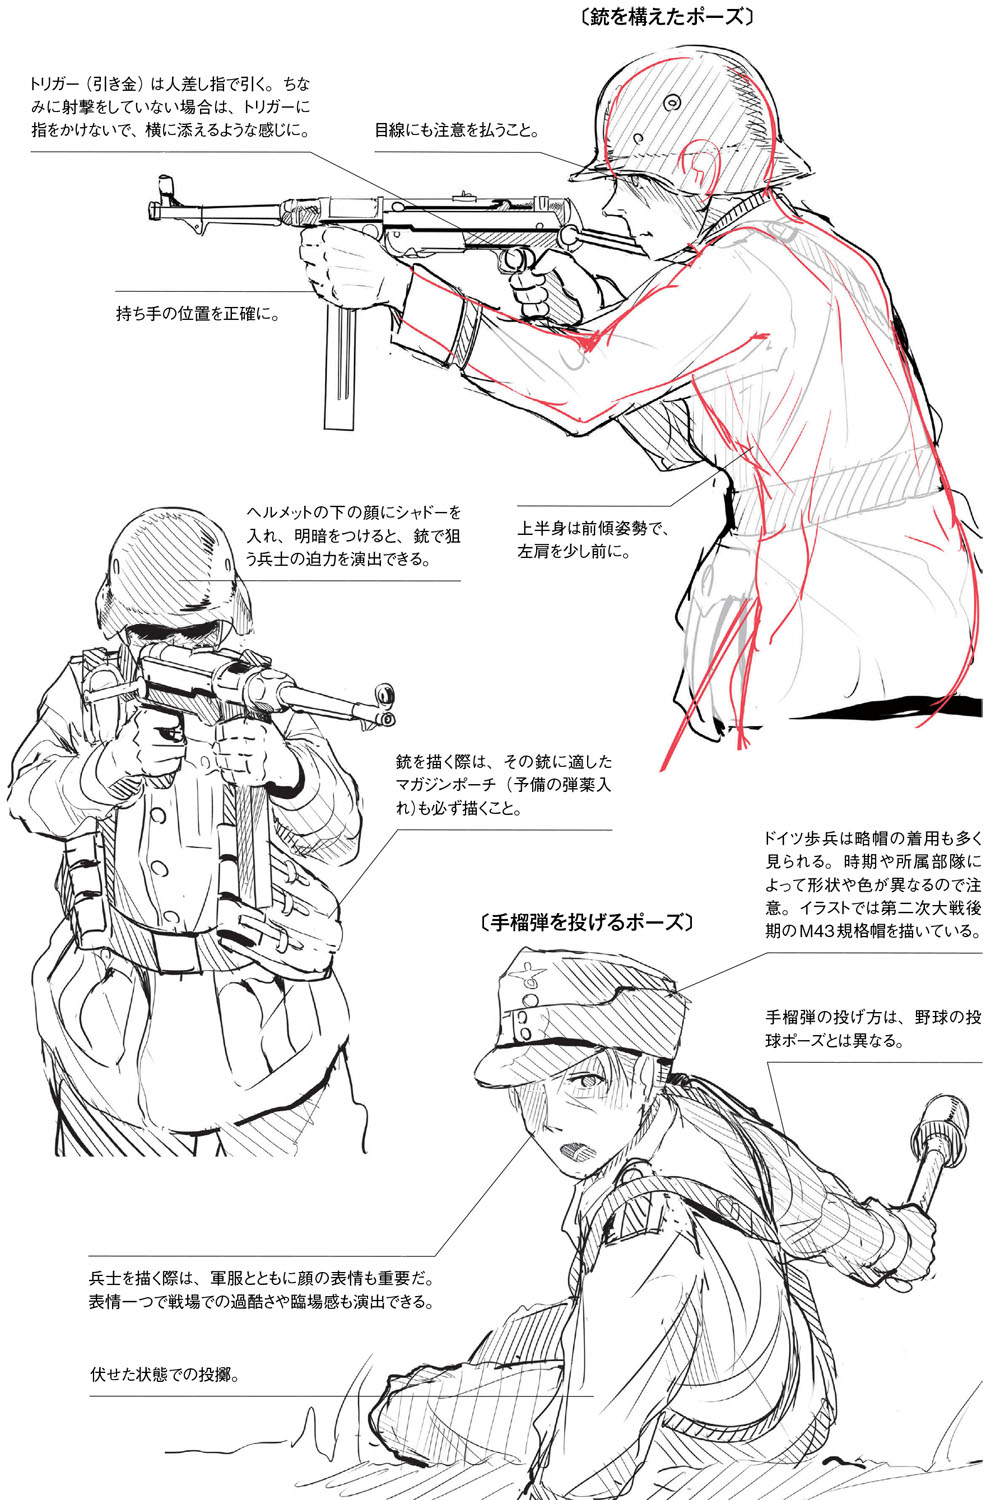 銃の持ち方 構え方は正確に描写しよう 作画のための第二次大戦軍服